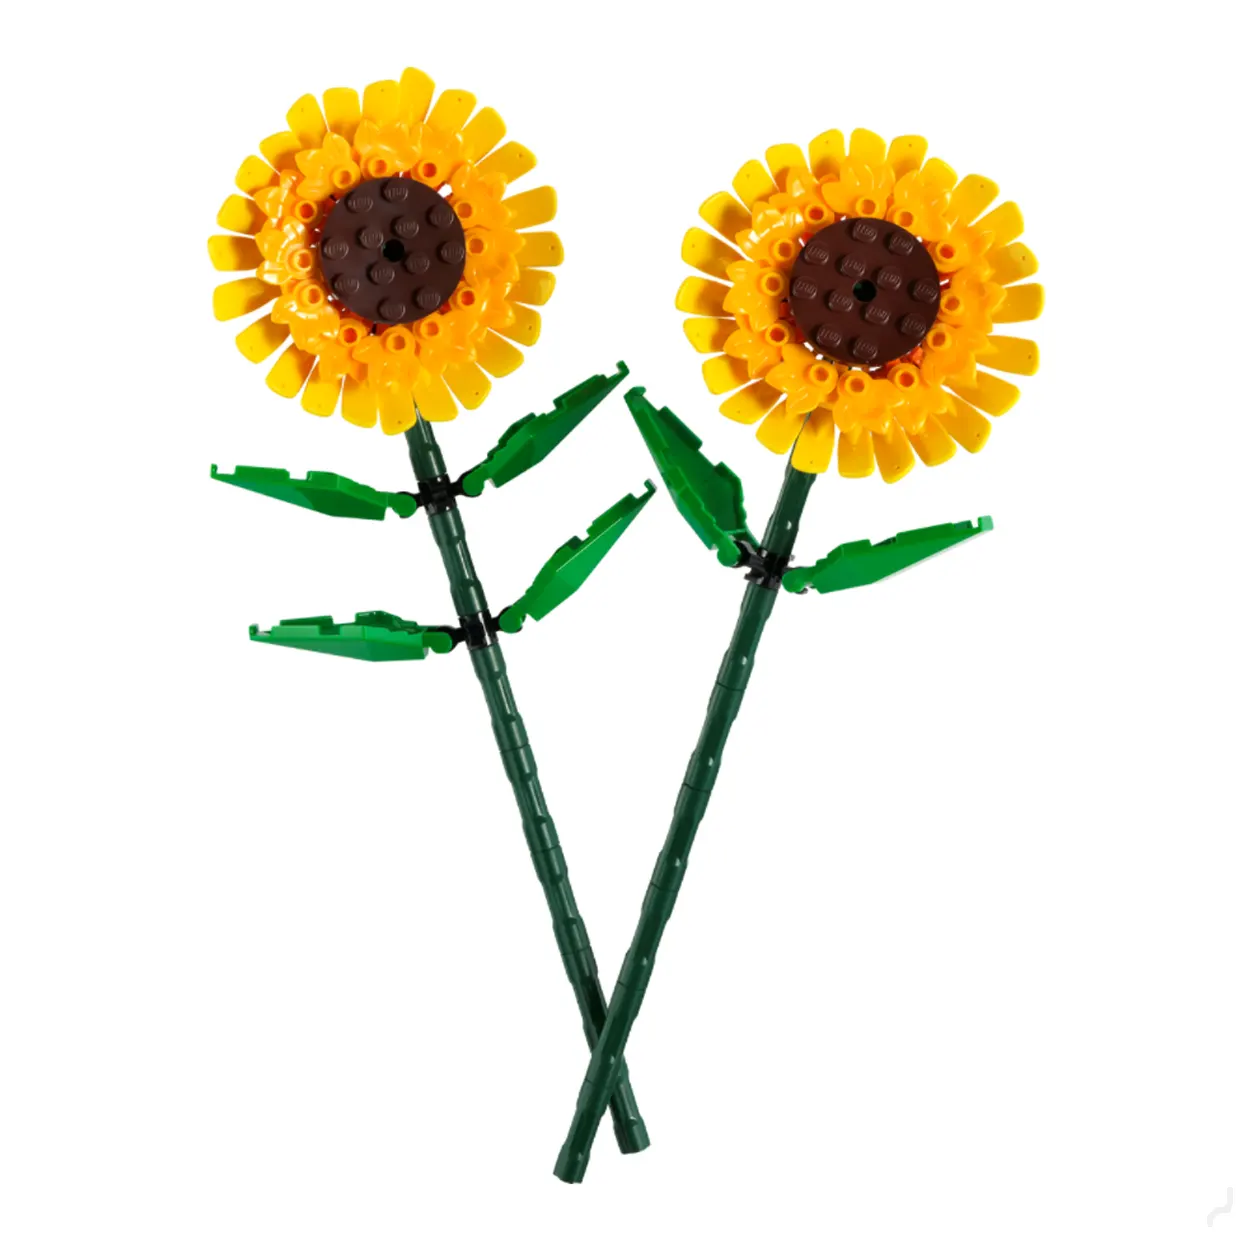 LEGO 40524 Sunflower New Sets for Jan. 1st 2022 Revealed